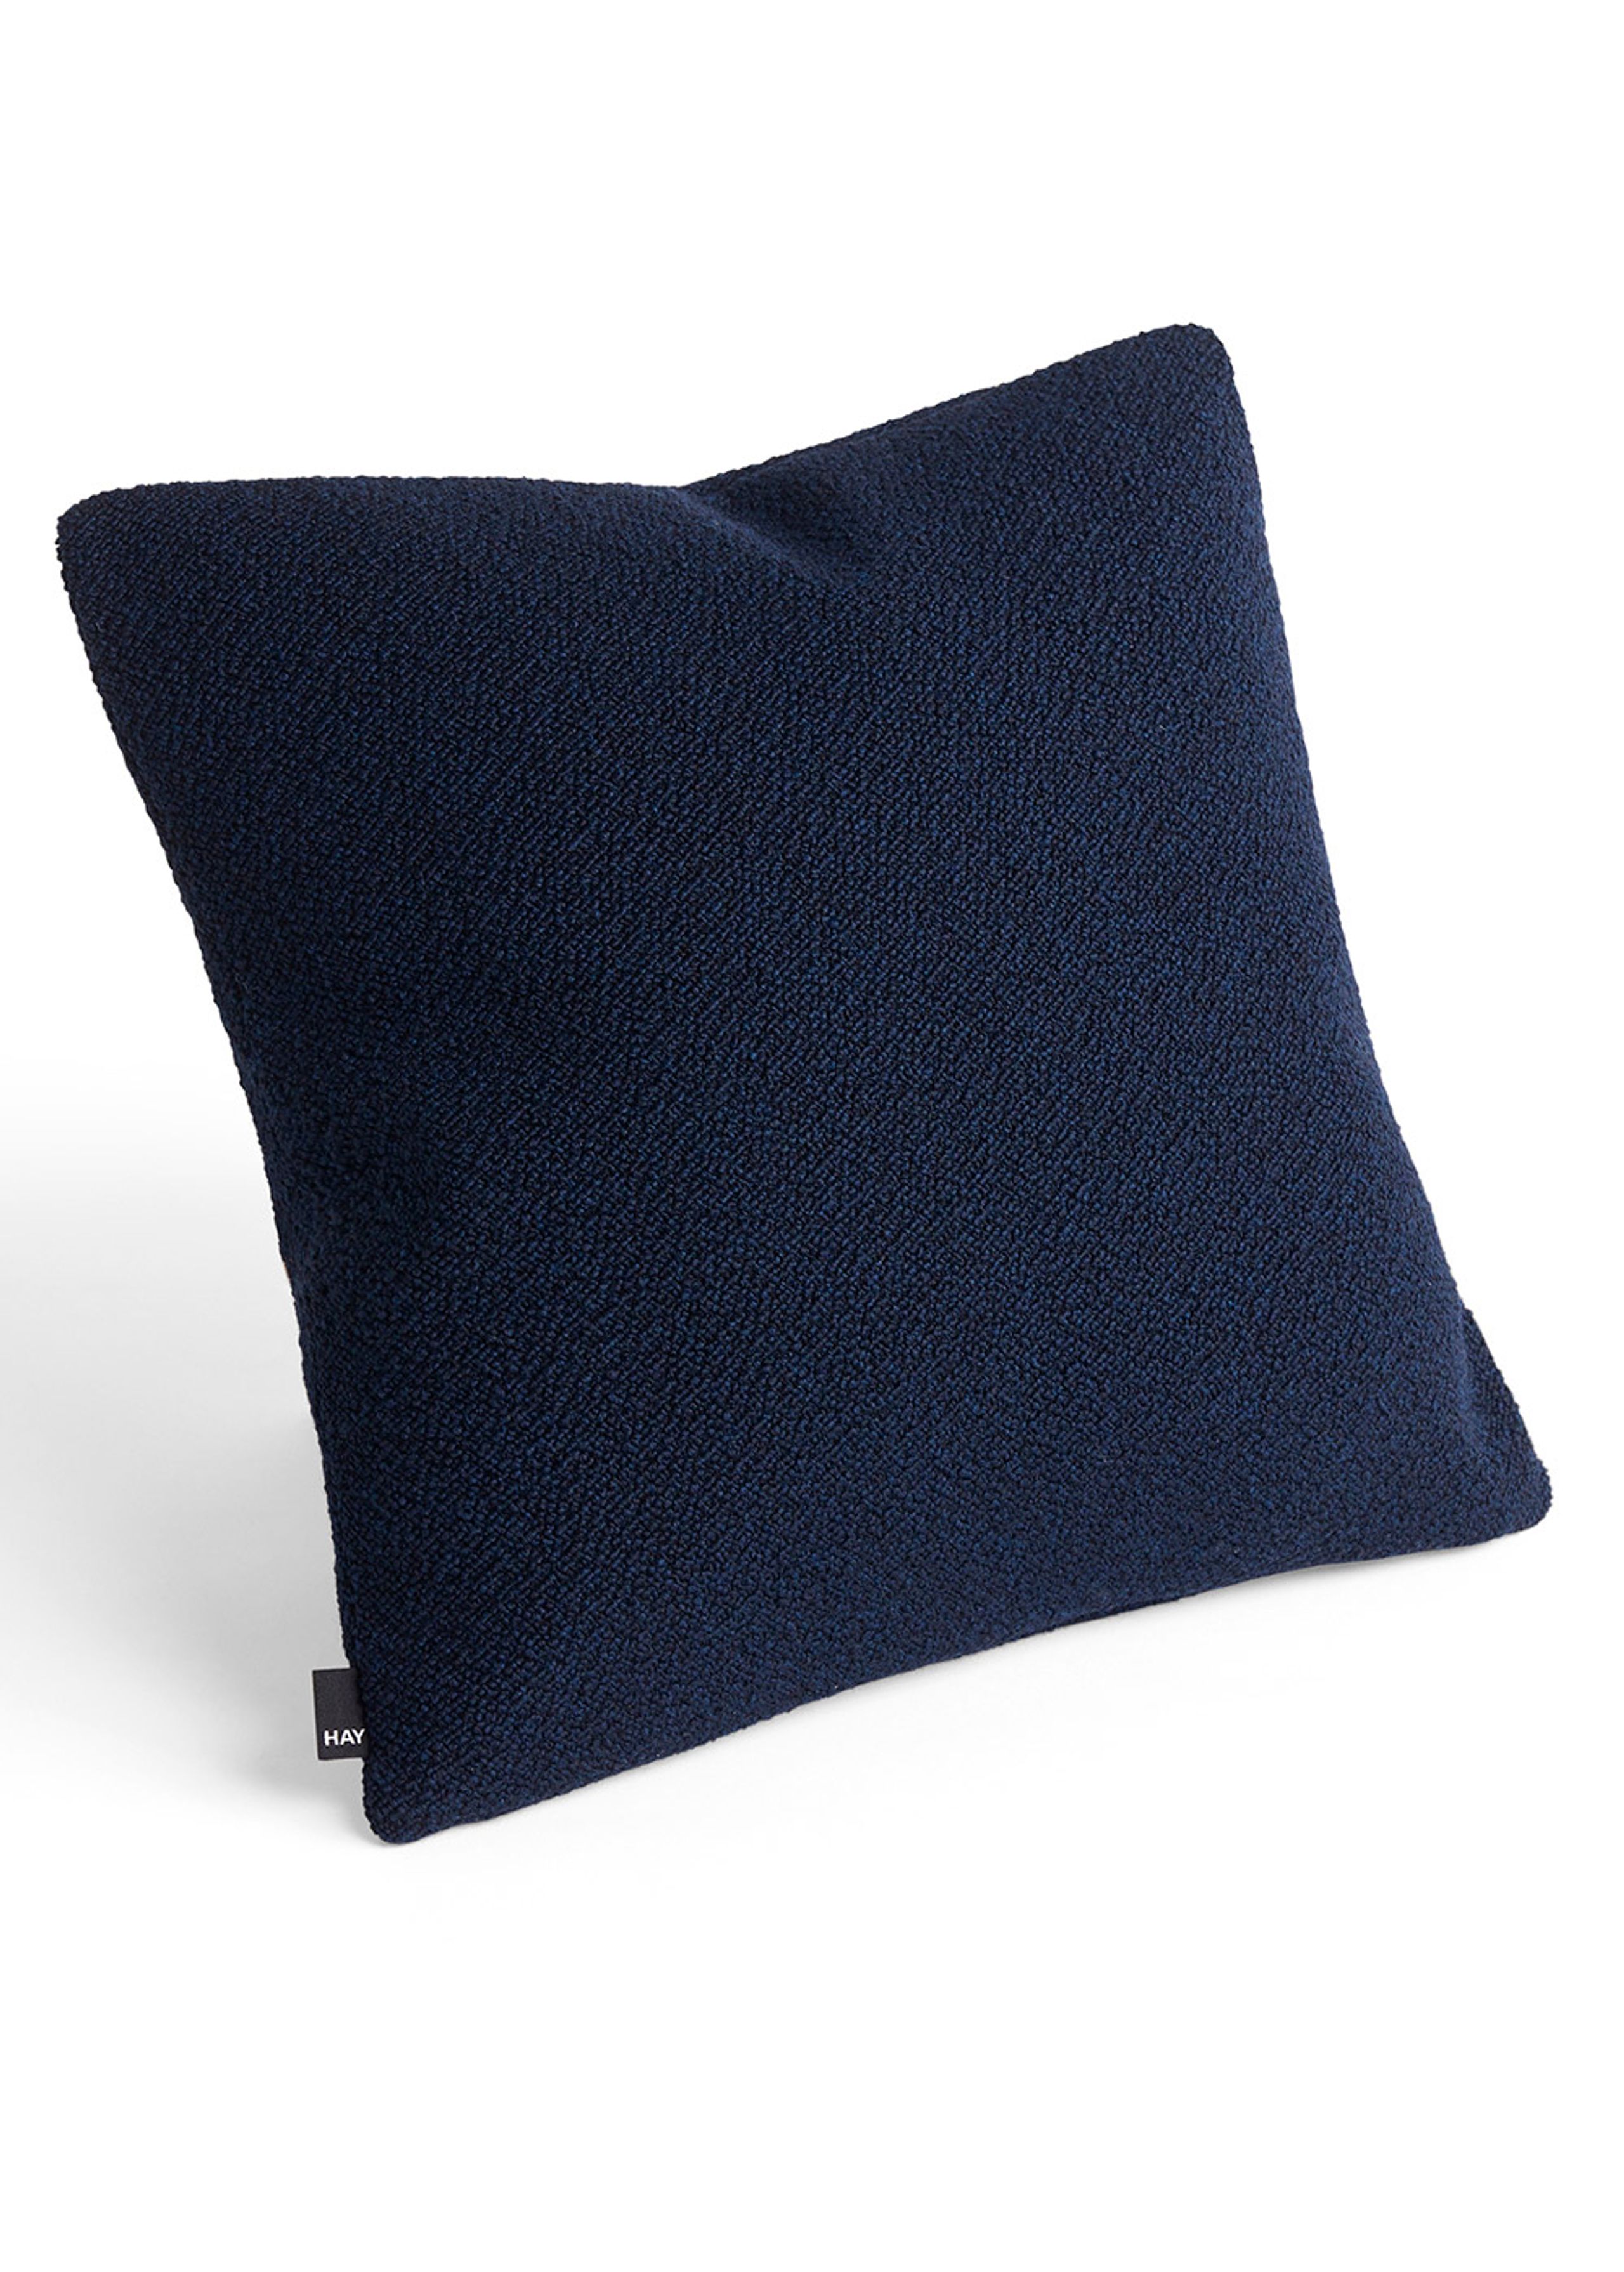 HAY - Kissen - Texture Cushion - Dark Blue